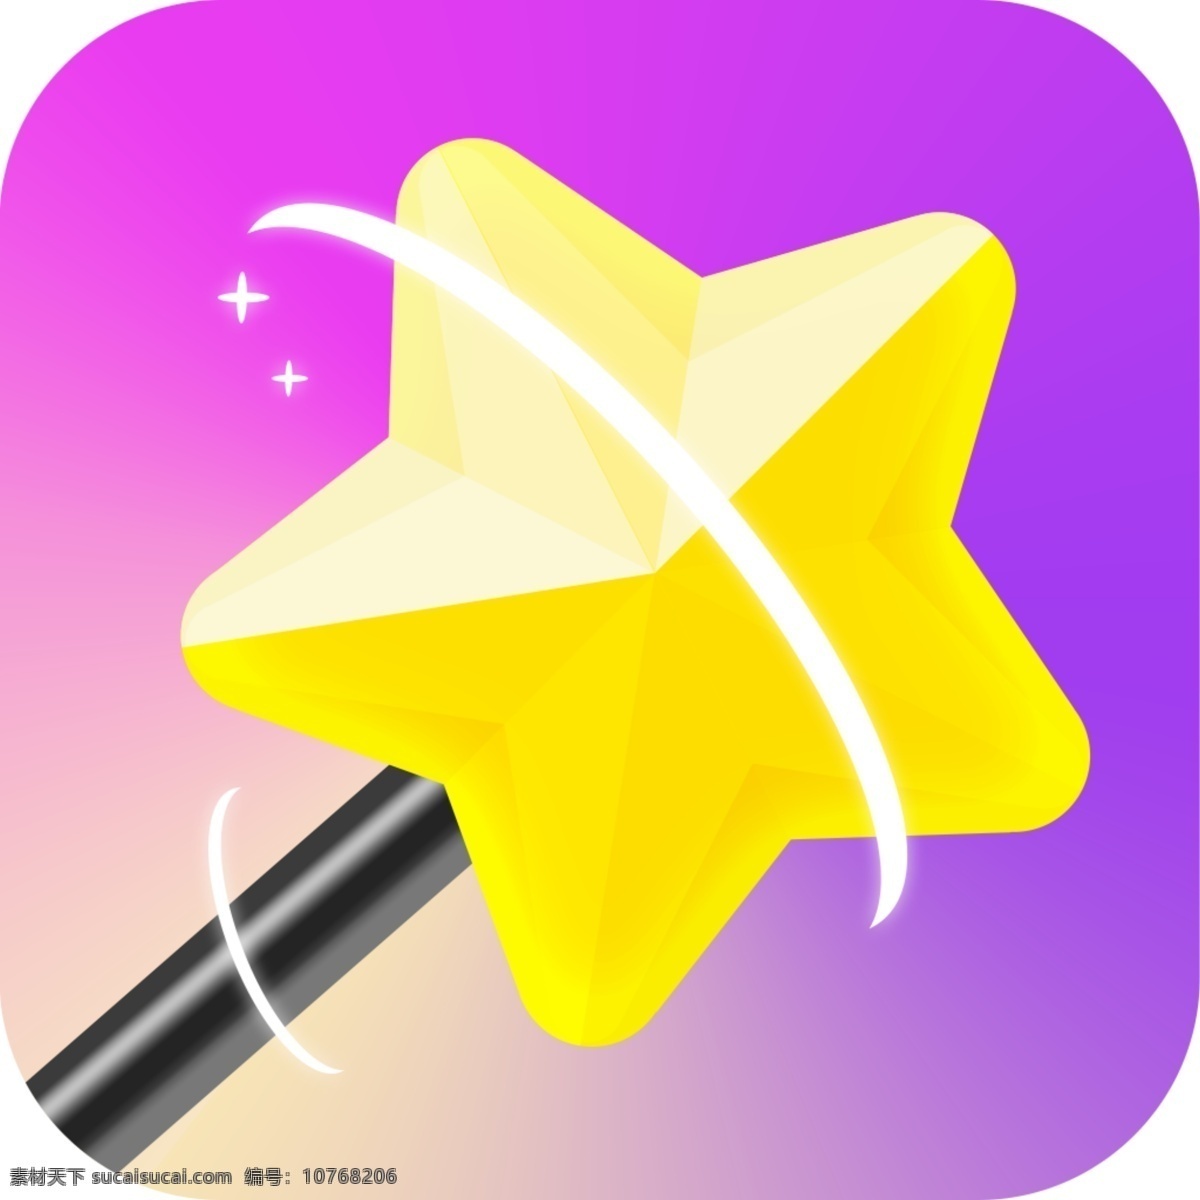 魔术 棒 icon 图标设计 游戏图标 女性化 唯美 梦幻 五角星 魔棒 光束 渐变 彩色 棒子 星星 紫色